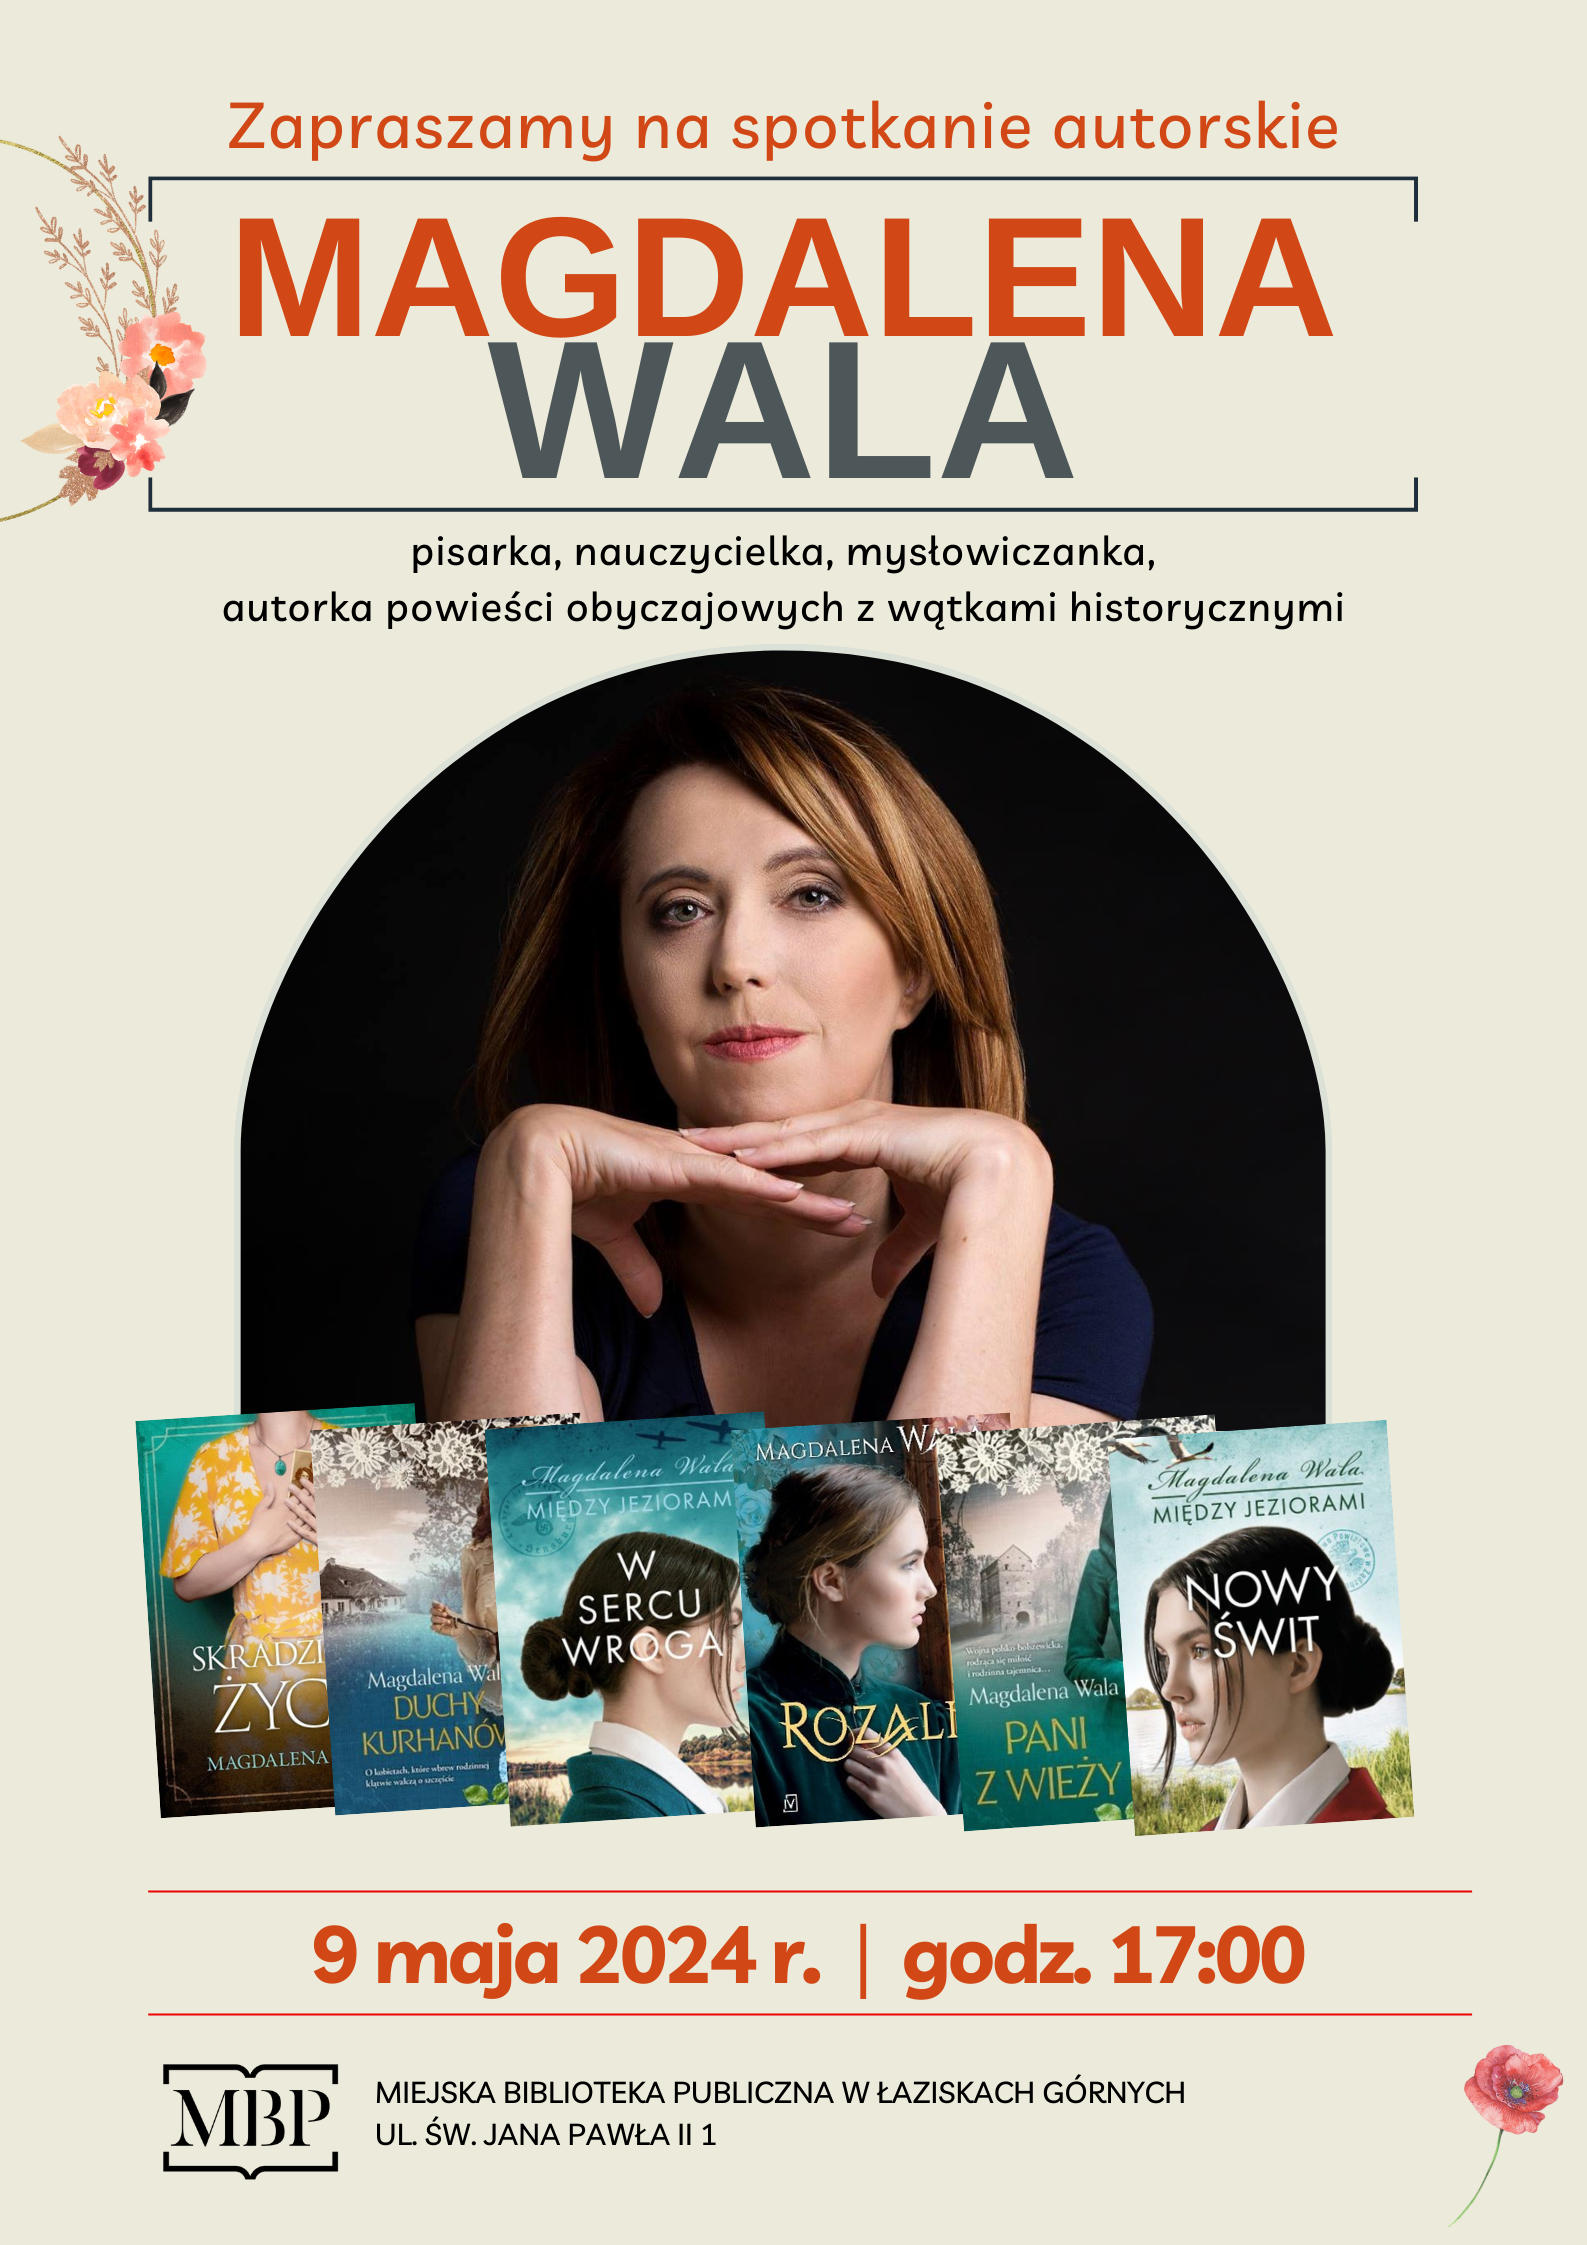 Plakat spotkania autorskiego z Magdaleną Wala. Zdjęcie autorki, okładki kilku książek